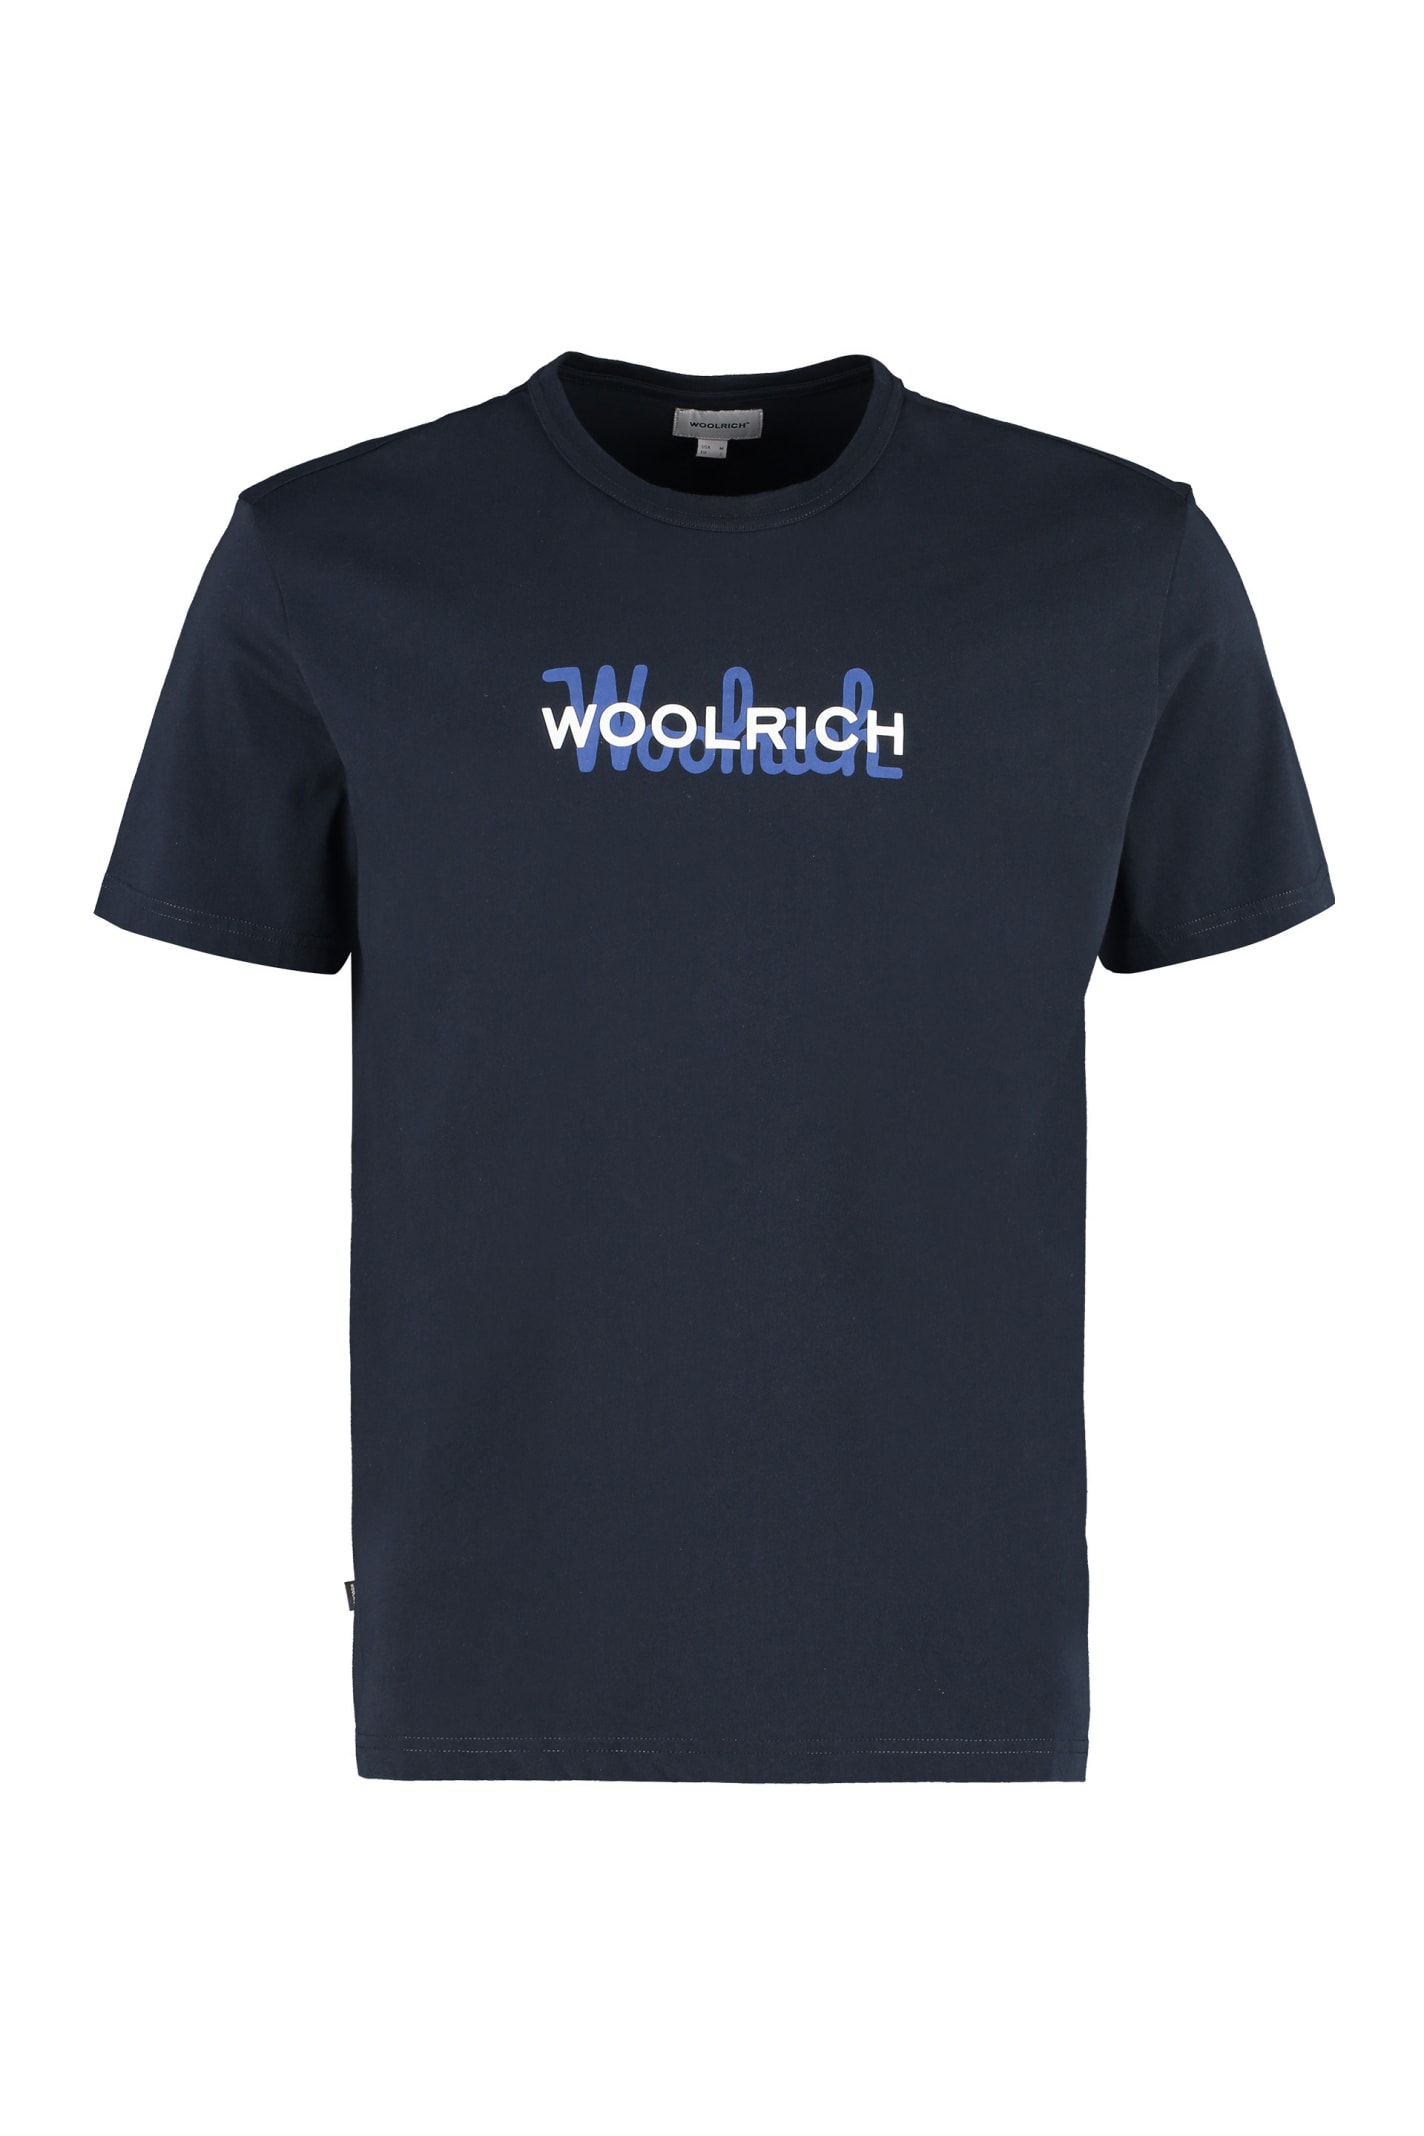 Woolrich Cotton Crew-neck T-shirt